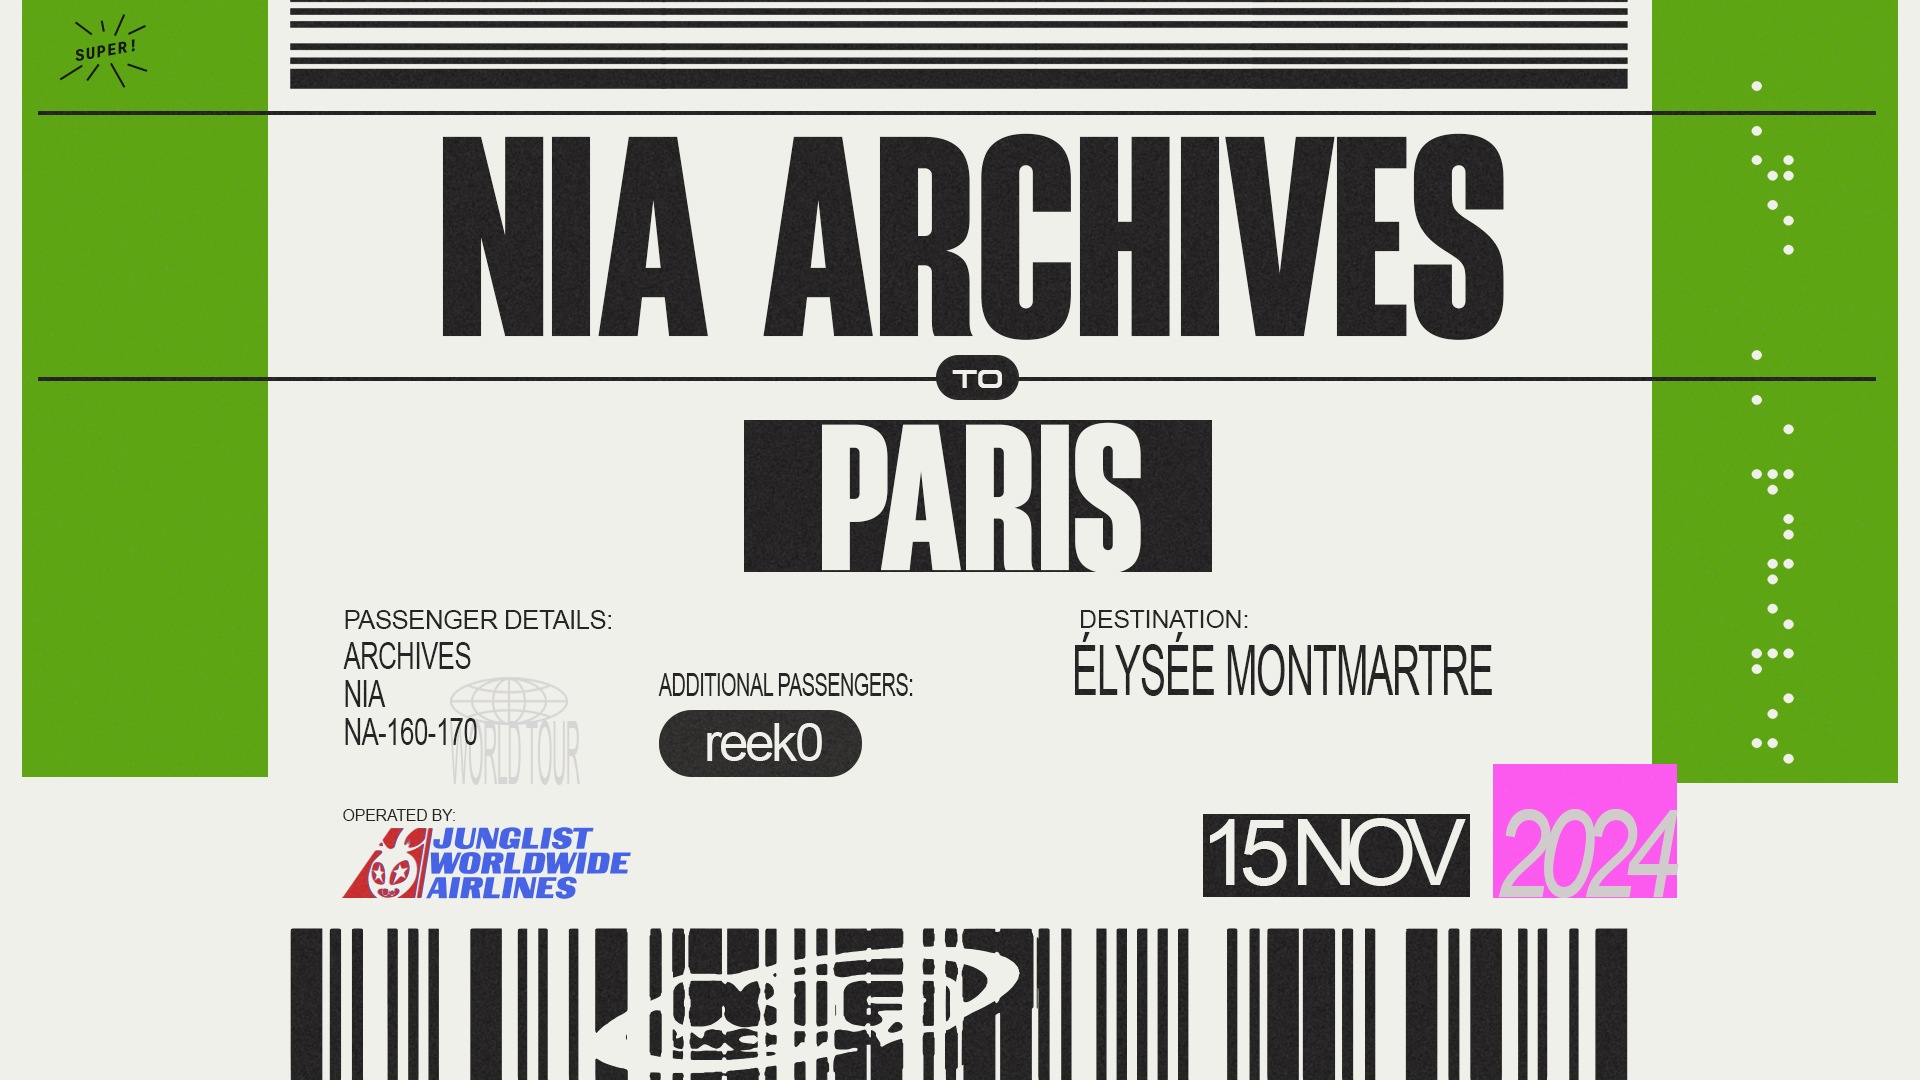 Affiche du concert de Nia Archives à l'Elysée Montmartre